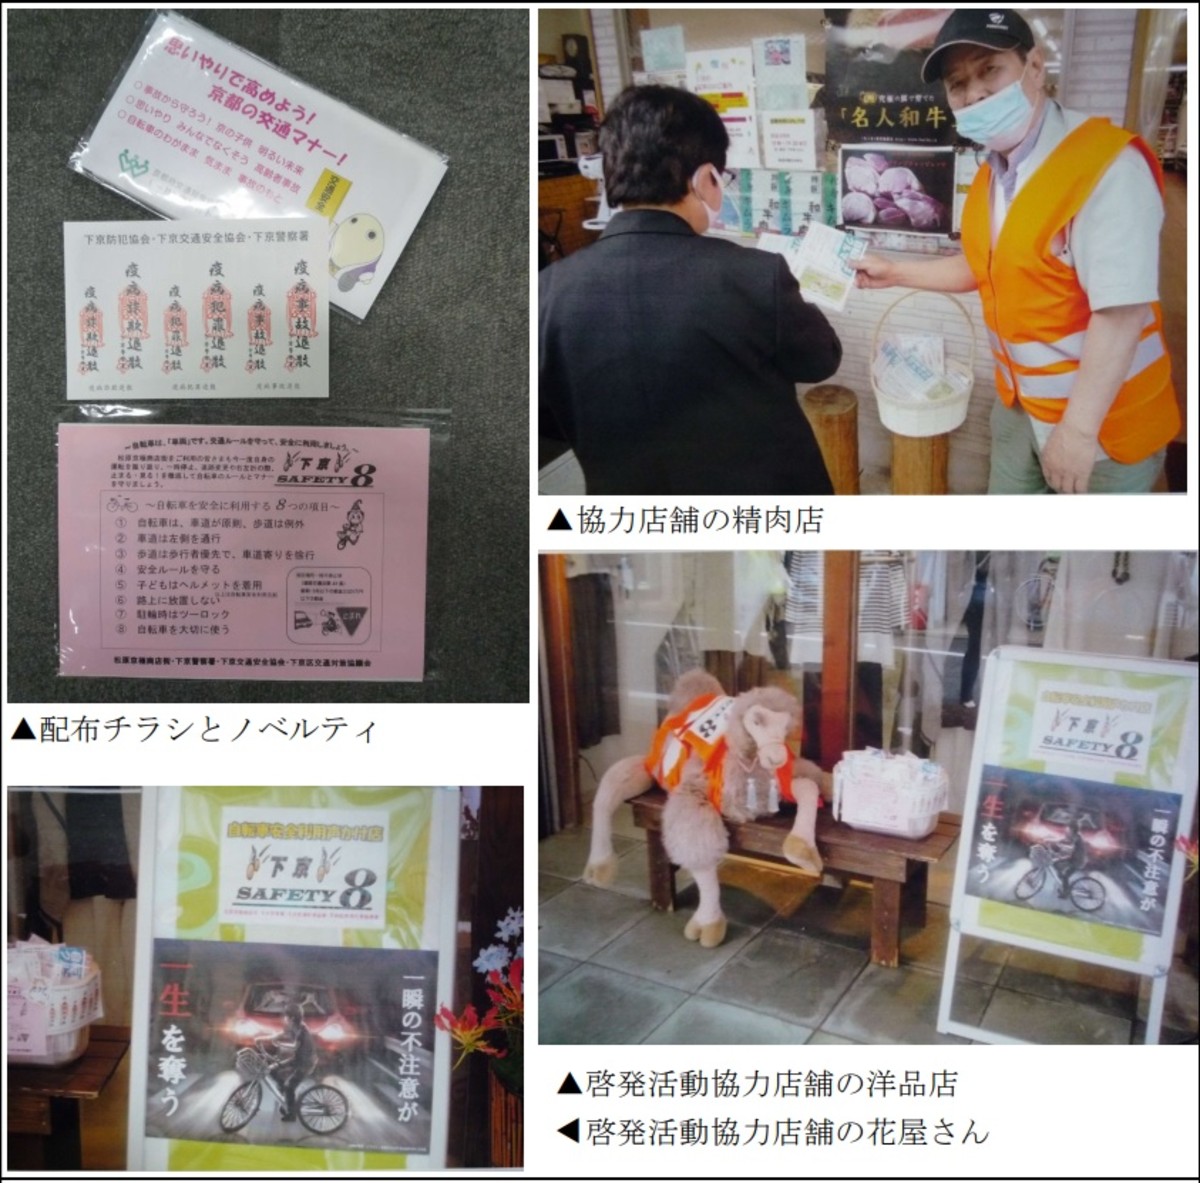 松原京極商店街協力店舗による自転車安全利用啓発活動の実施